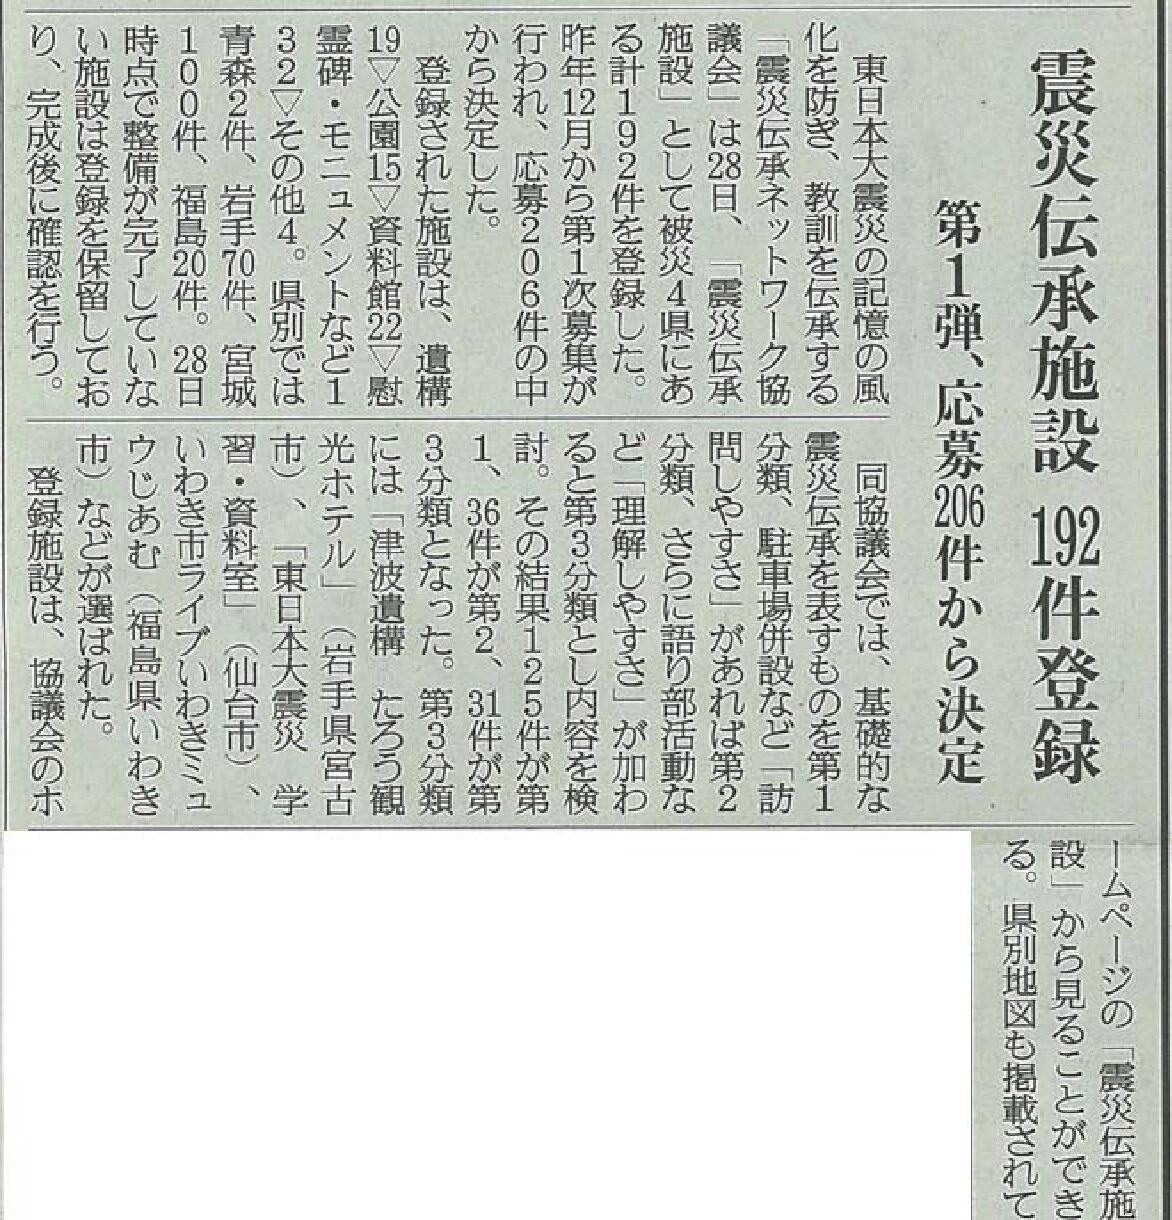 2019/3/29【産経新聞】震災伝承施設192件登録